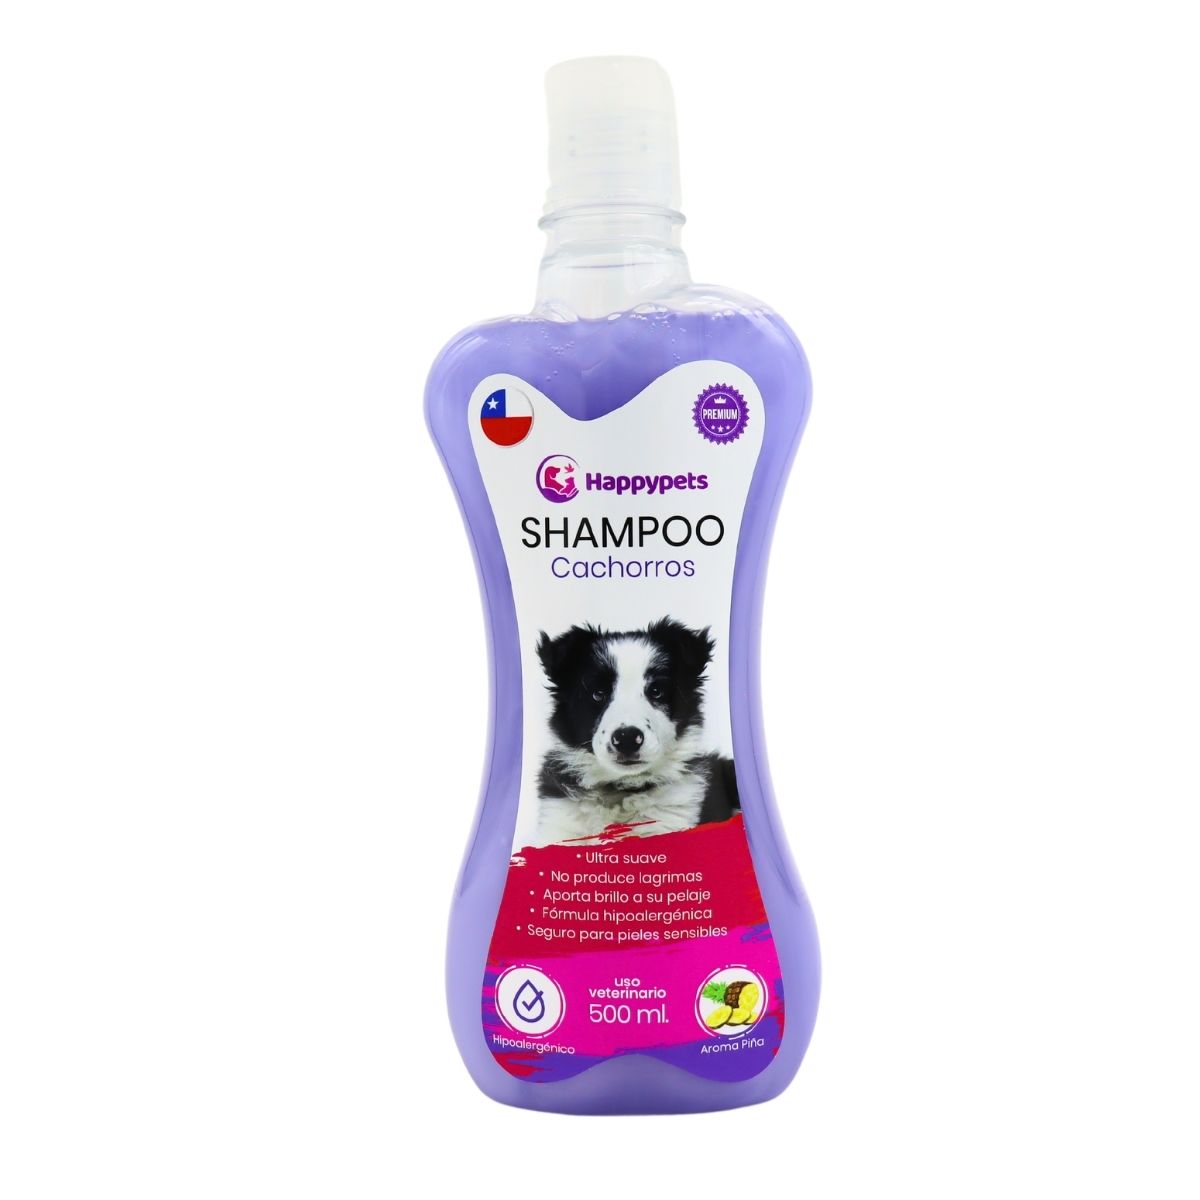 Happypets Shampoo Para Cachorros Hipoalergénico